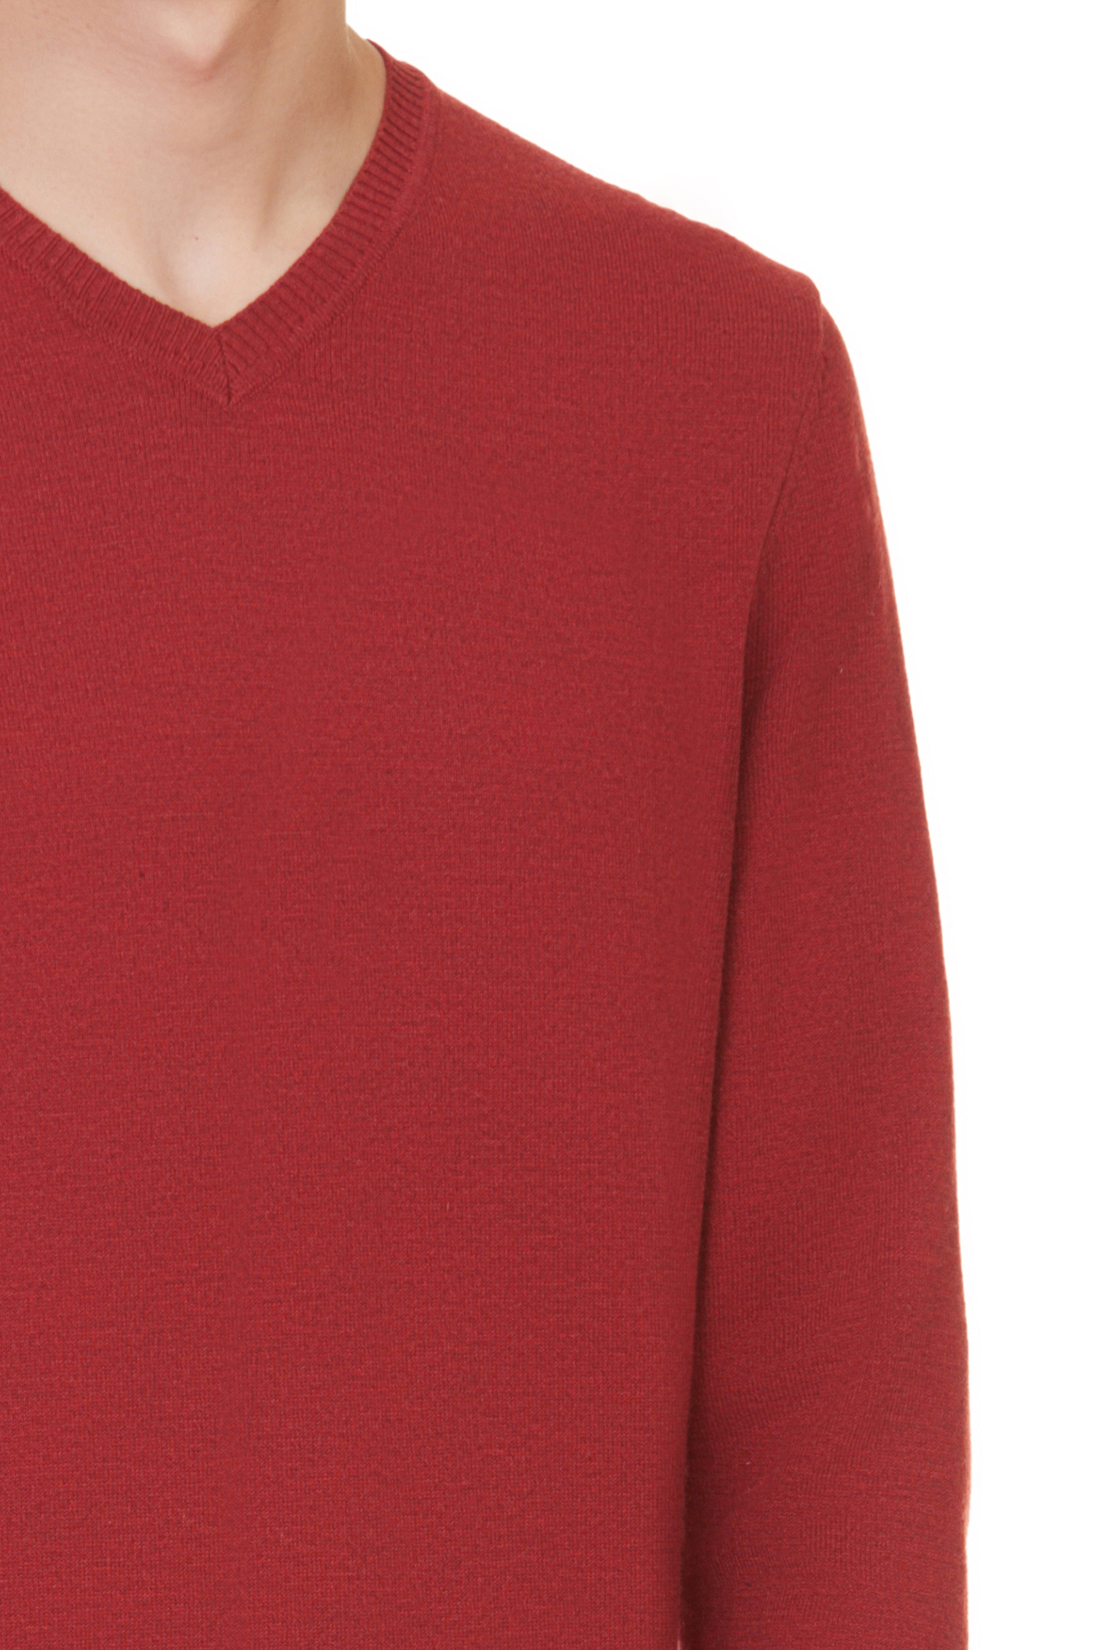 Базовый пуловер (арт. baon B637703), размер XXL, цвет red melange#красный Базовый пуловер (арт. baon B637703) - фото 4